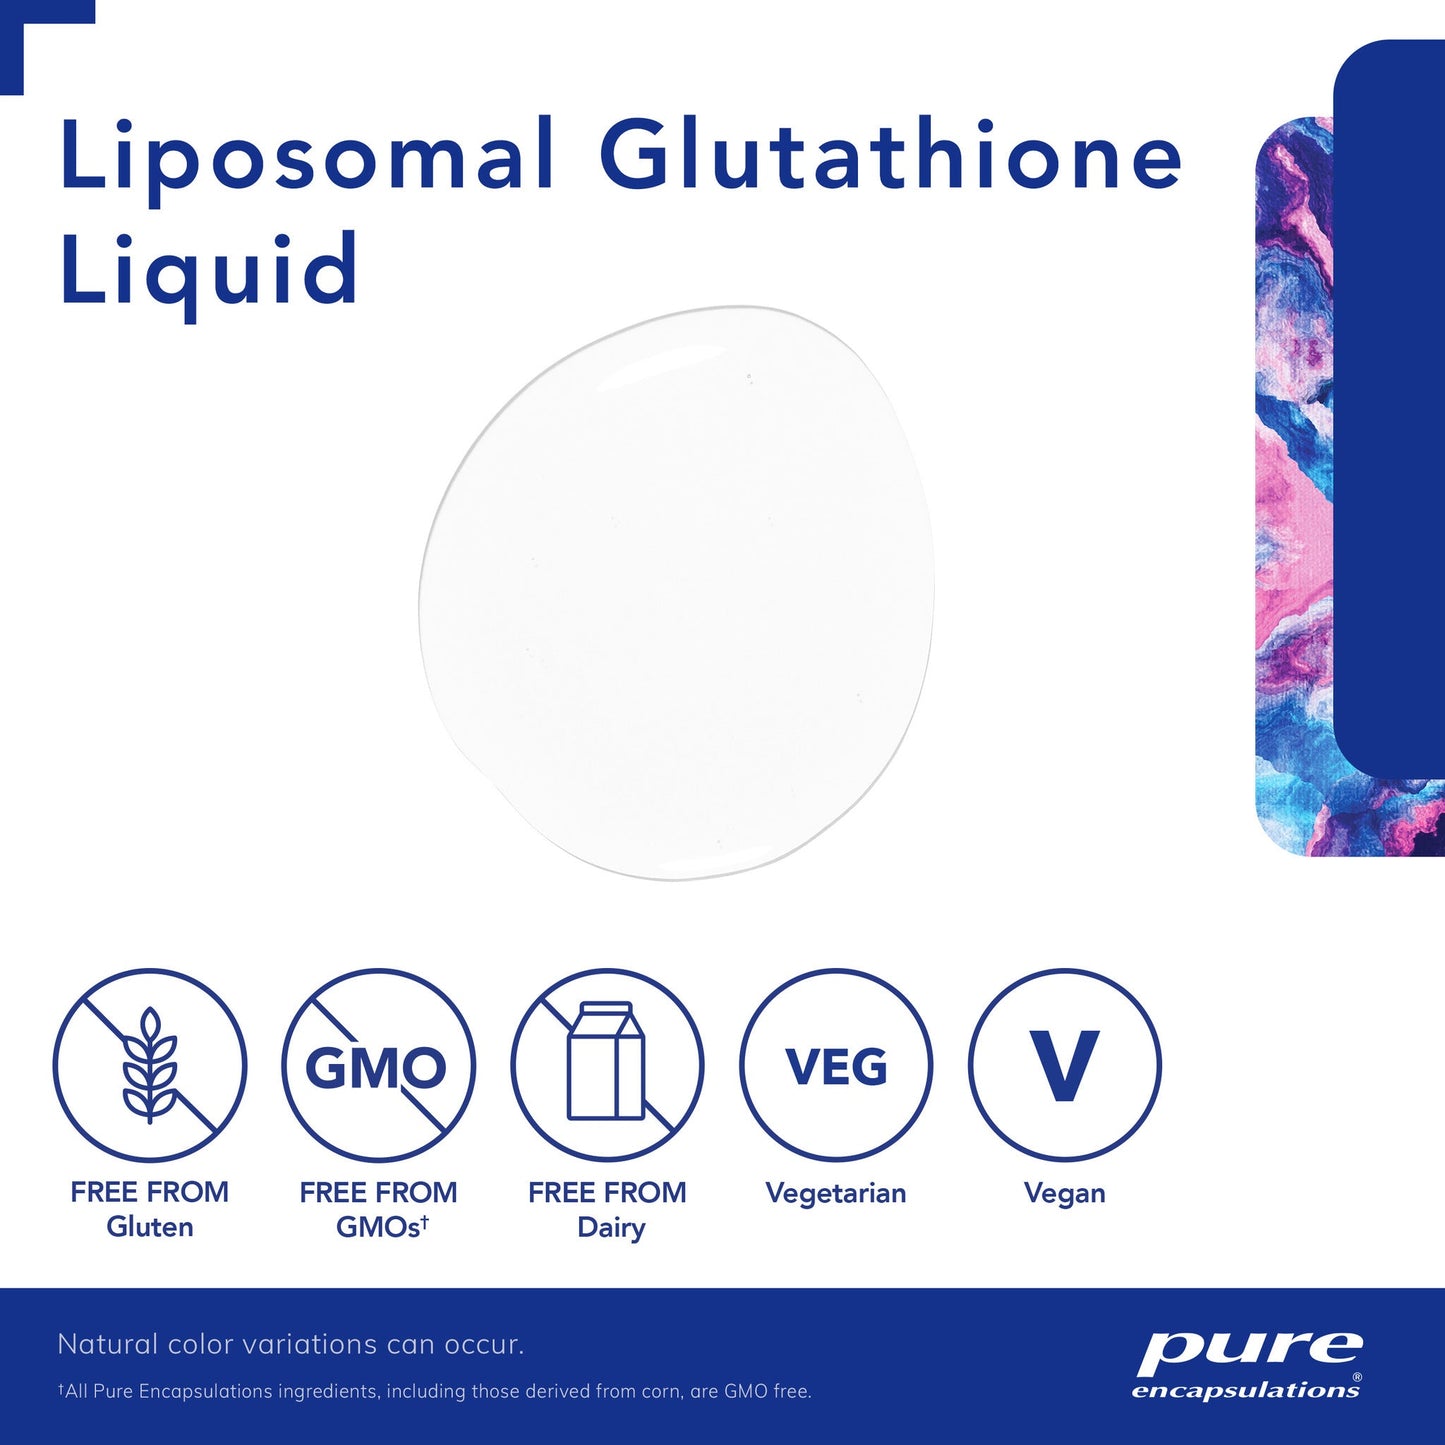 Liposomal Glutathione liquid